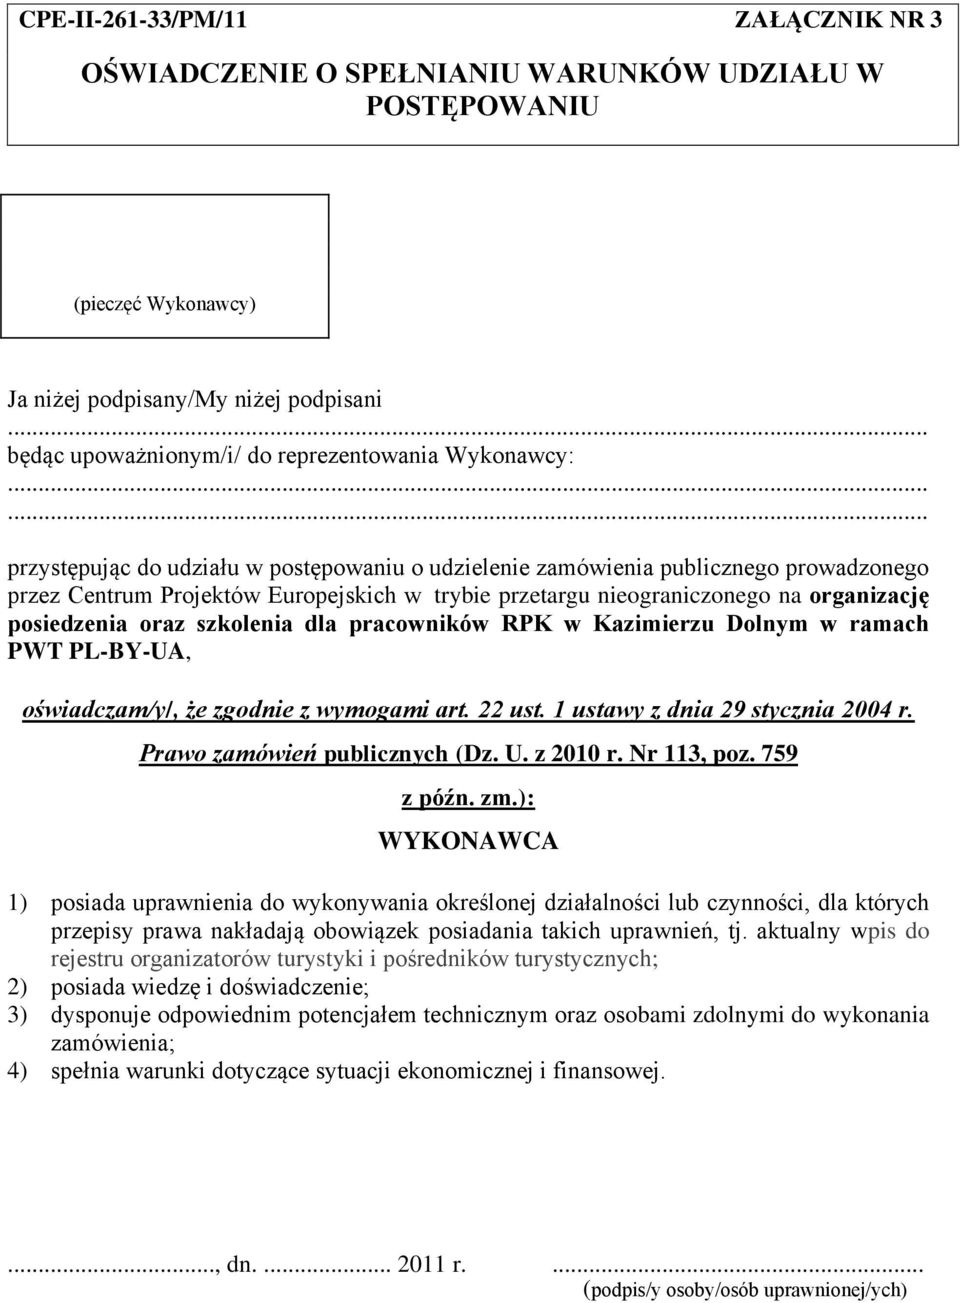 oraz szkolenia dla pracowników RPK w Kazimierzu Dolnym w ramach PWT PL-BY-UA, oświadczam/y/, że zgodnie z wymogami art. 22 ust. 1 ustawy z dnia 29 stycznia 2004 r. Prawo zamówień publicznych (Dz. U.